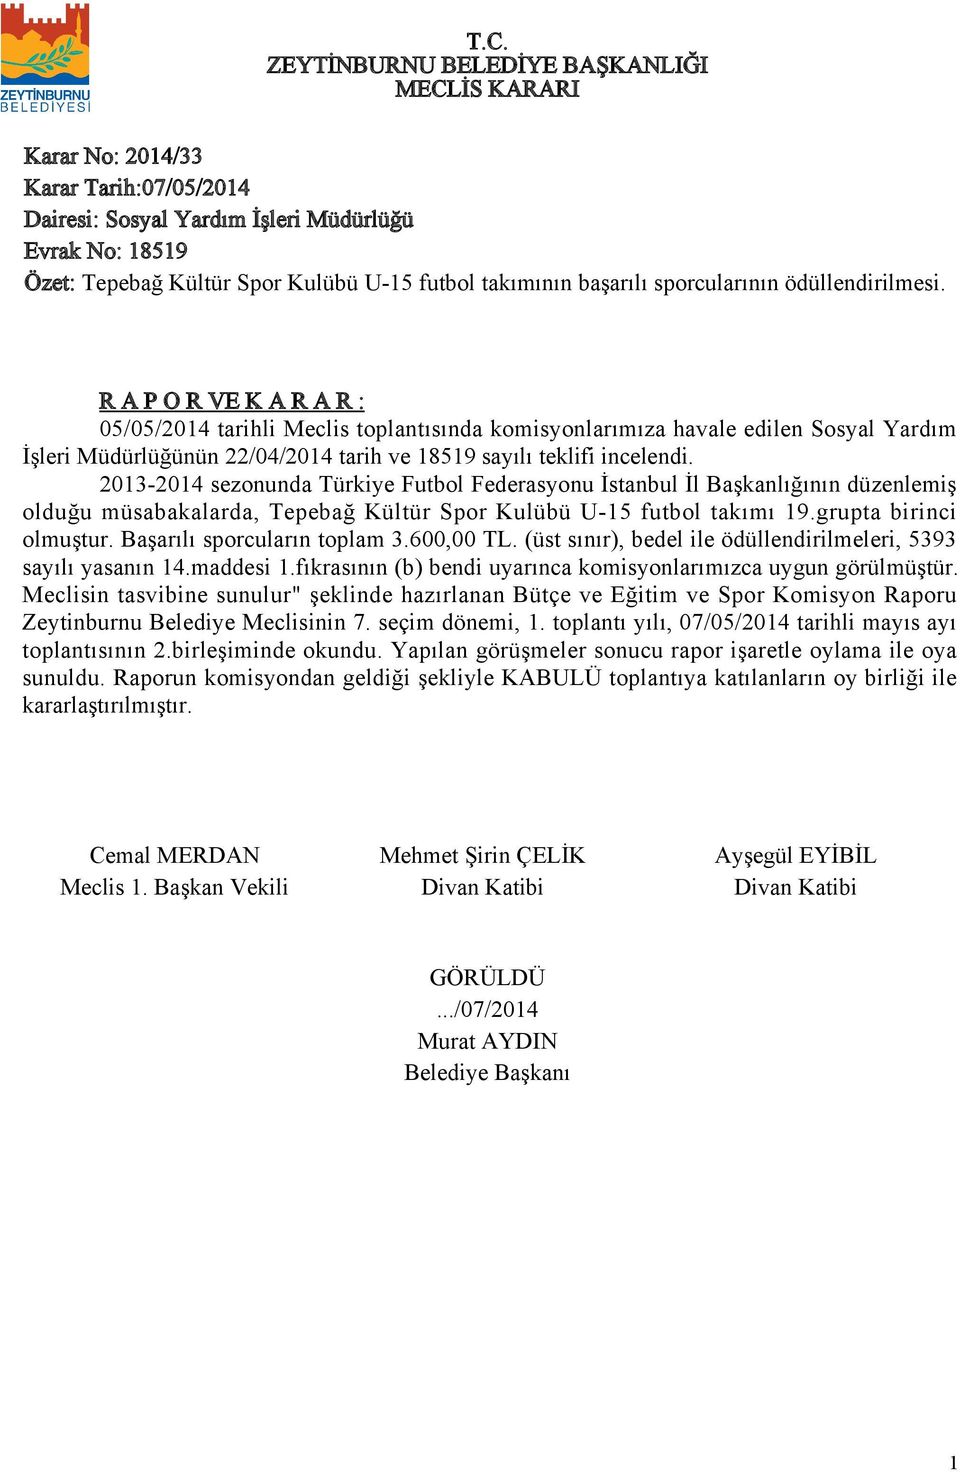 203-204 sezonunda Türkiye Futbol Federasyonu İstanbul İl Başkanlığının düzenlemiş olduğu müsabakalarda, Tepebağ Kültür Spor Kulübü U-5 futbol takımı 9.grupta birinci olmuştur.